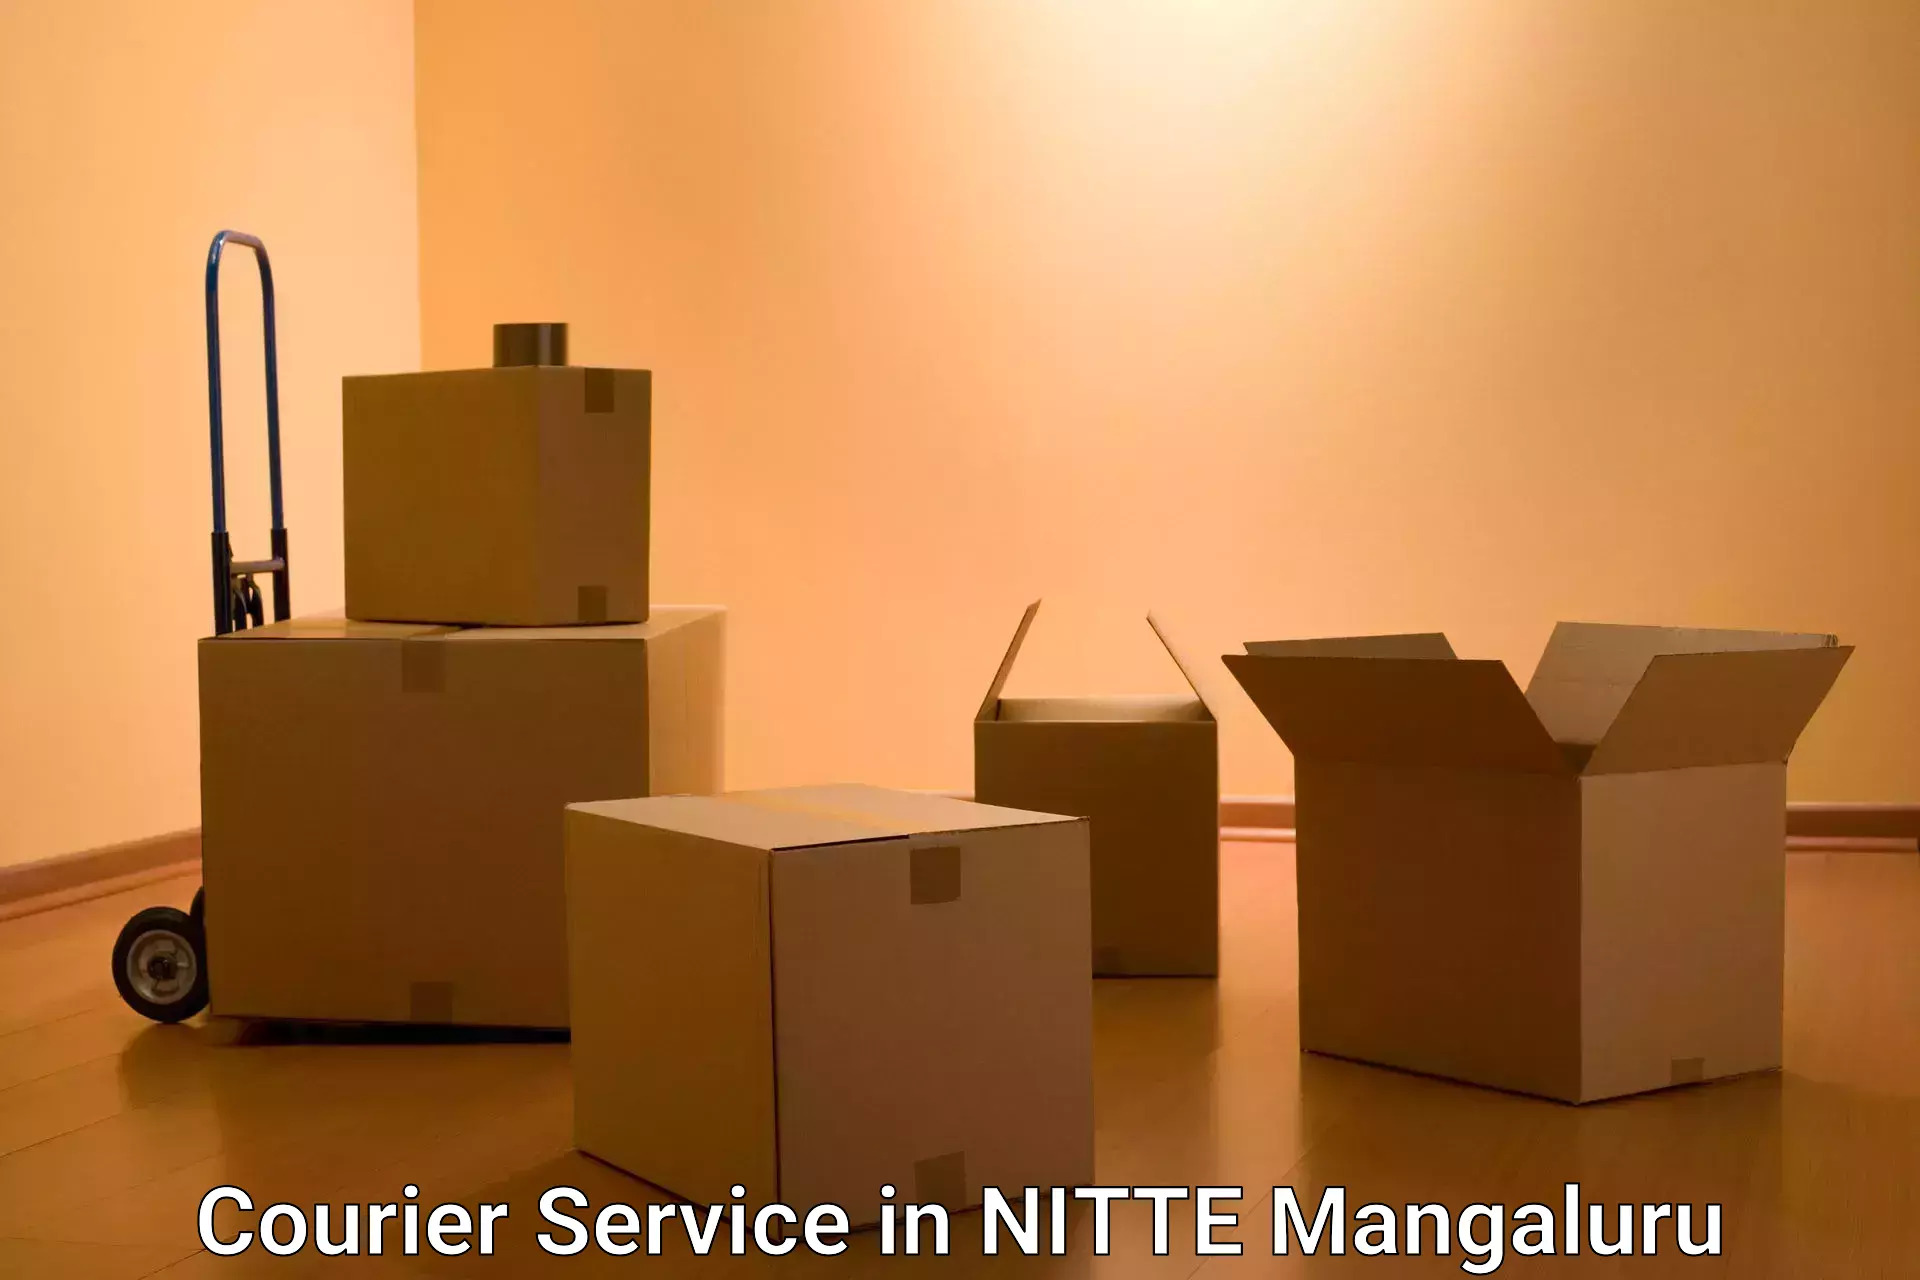 Comprehensive logistics solutions in NITTE Mangaluru